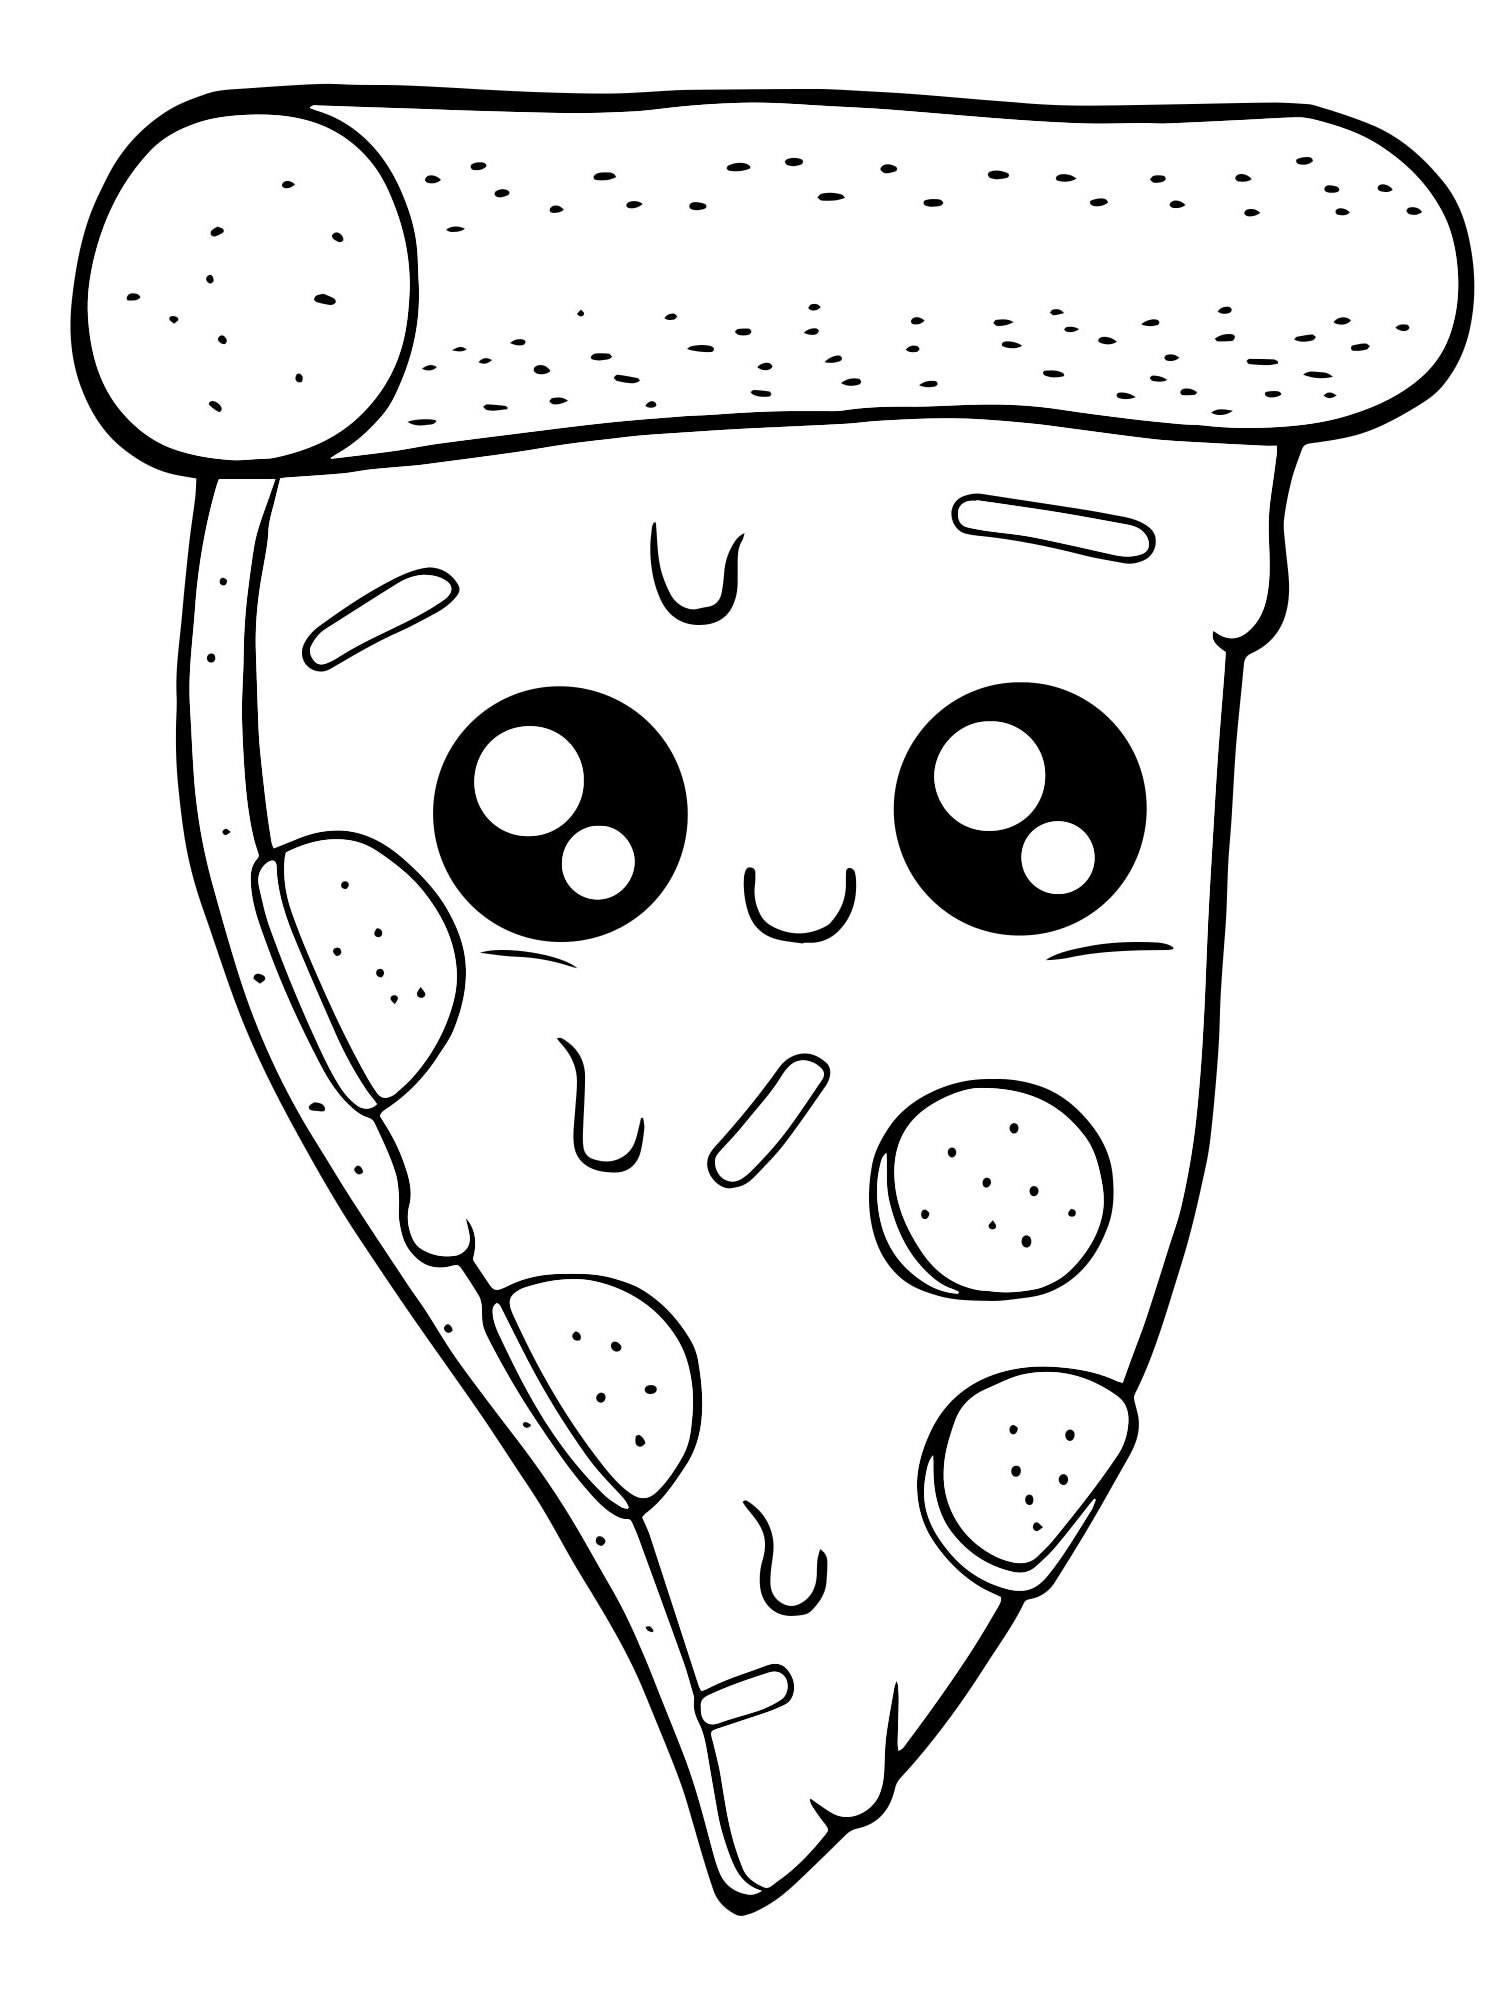 Пицца с сыром раскраска для детей